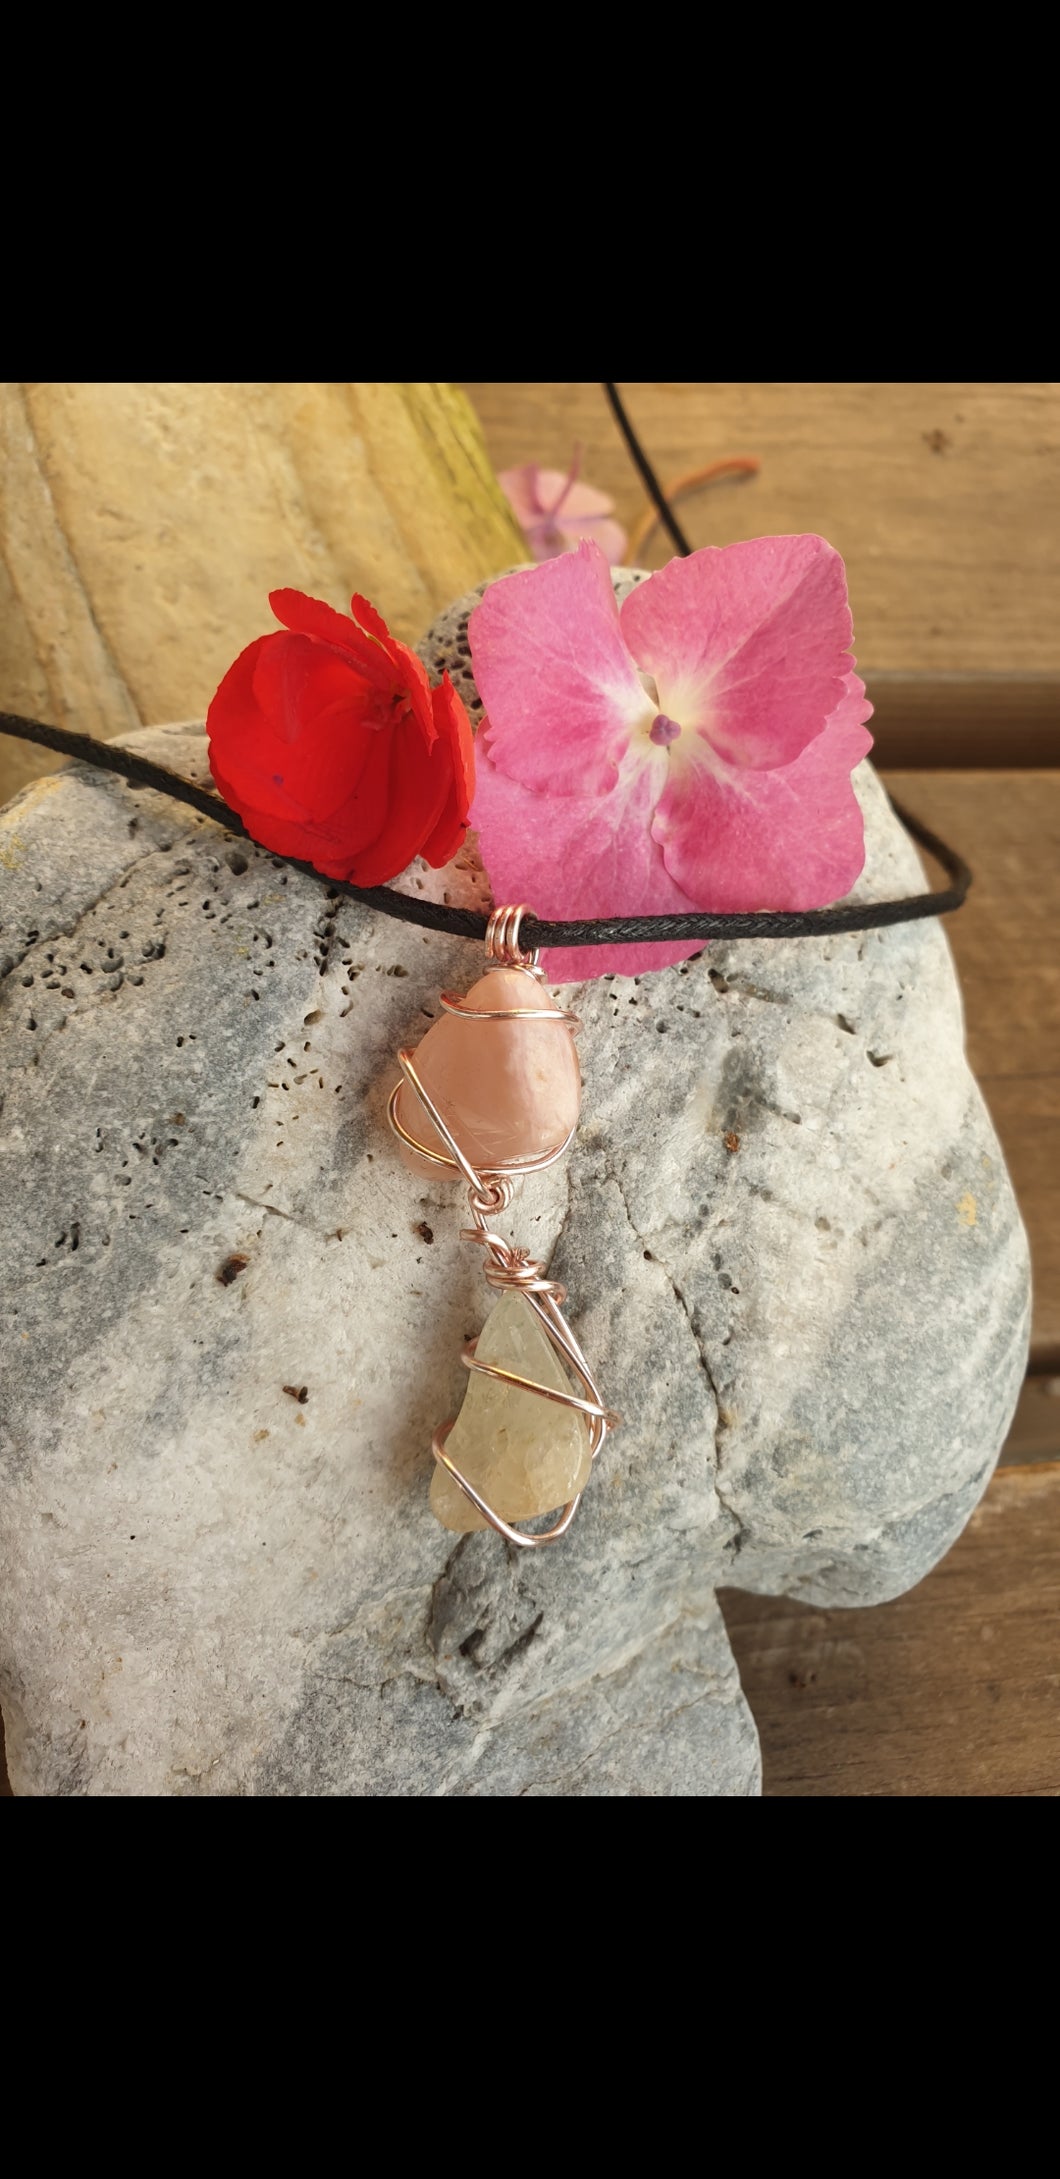 Pink opal & snow quartz pendant necklace